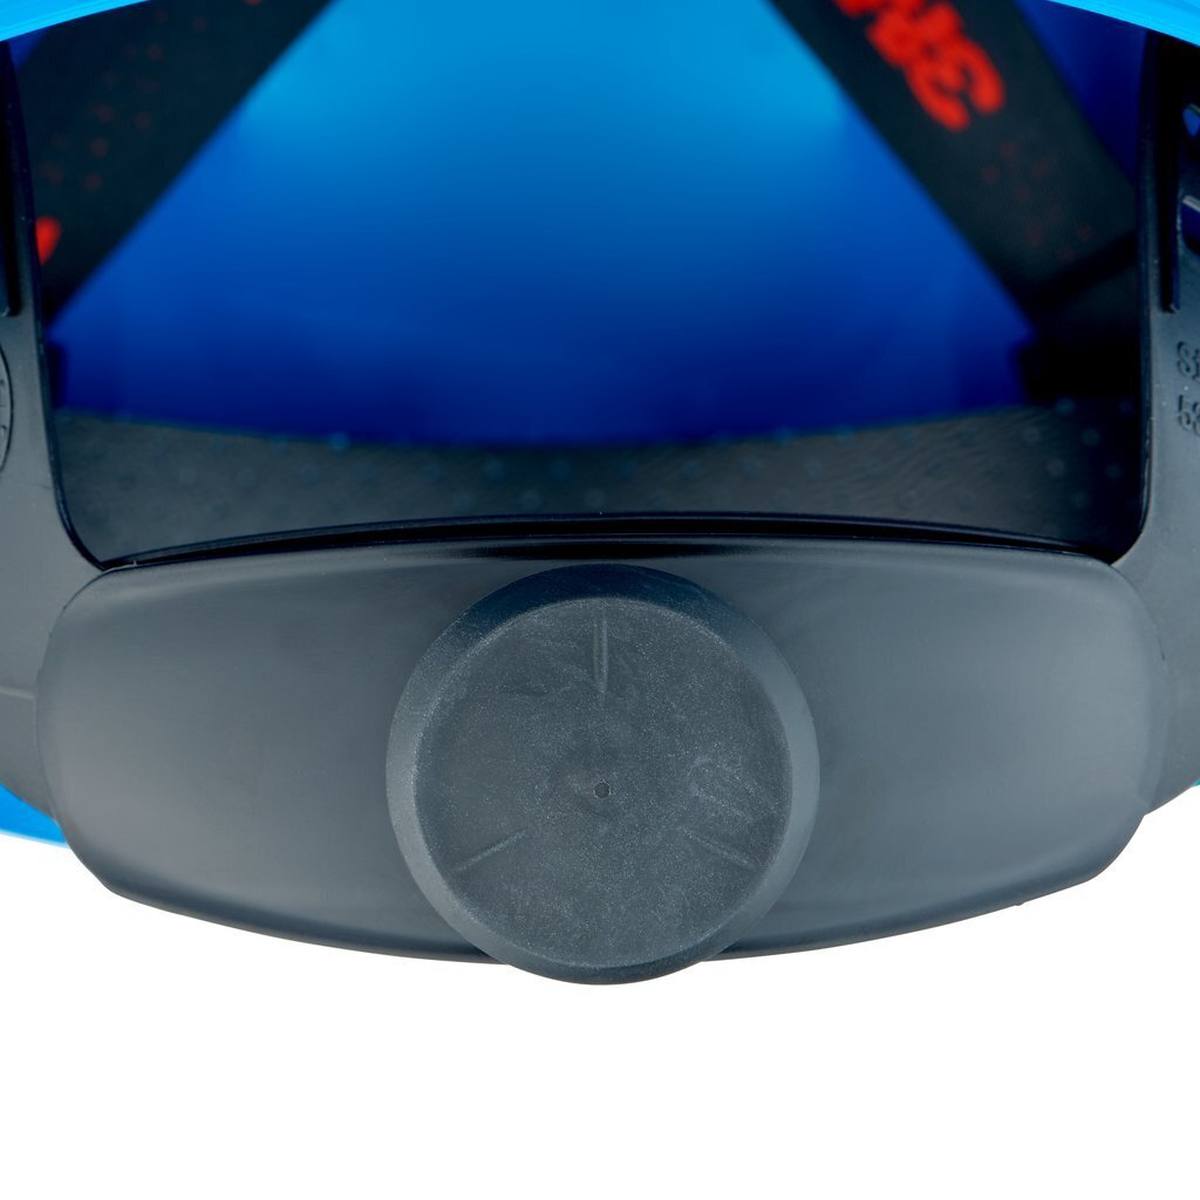 elmetto di sicurezza 3M G3000 con indicatore UV, blu, ABS, chiusura a cricchetto ventilata, fascia antisudore in plastica, adesivo riflettente